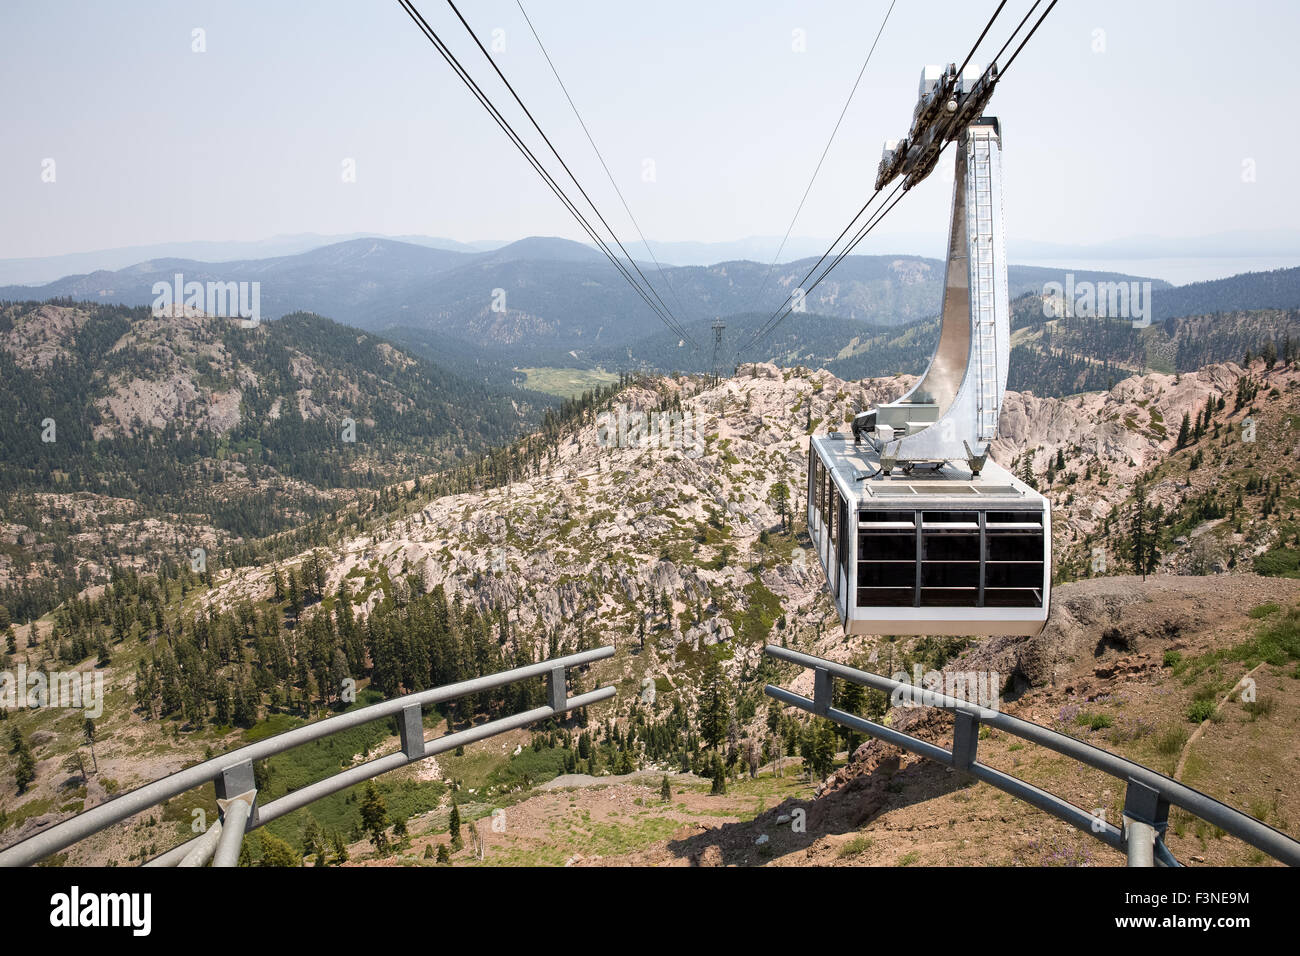 Dramatischen Blick auf einer hängenden Gondel.  Die Straßenbahn nähert sich der Gipfel des Berges in Squaw Valley, einem westlichen USA Ski Resort. Stockfoto